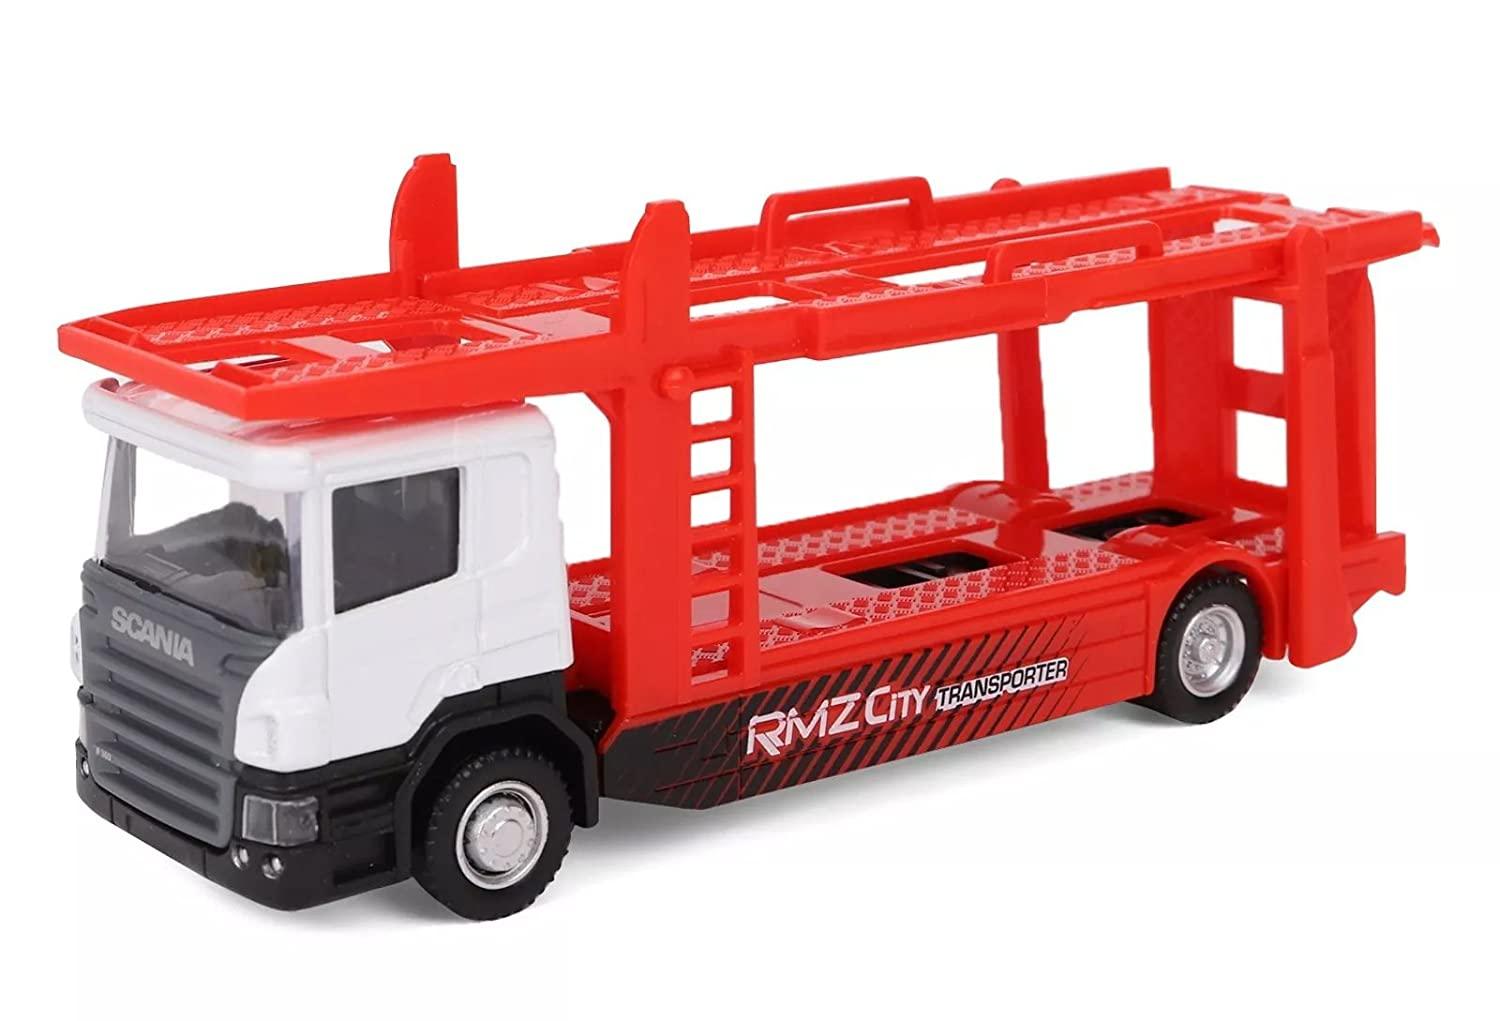 RMZ City Car 1:64 Scania Transporter